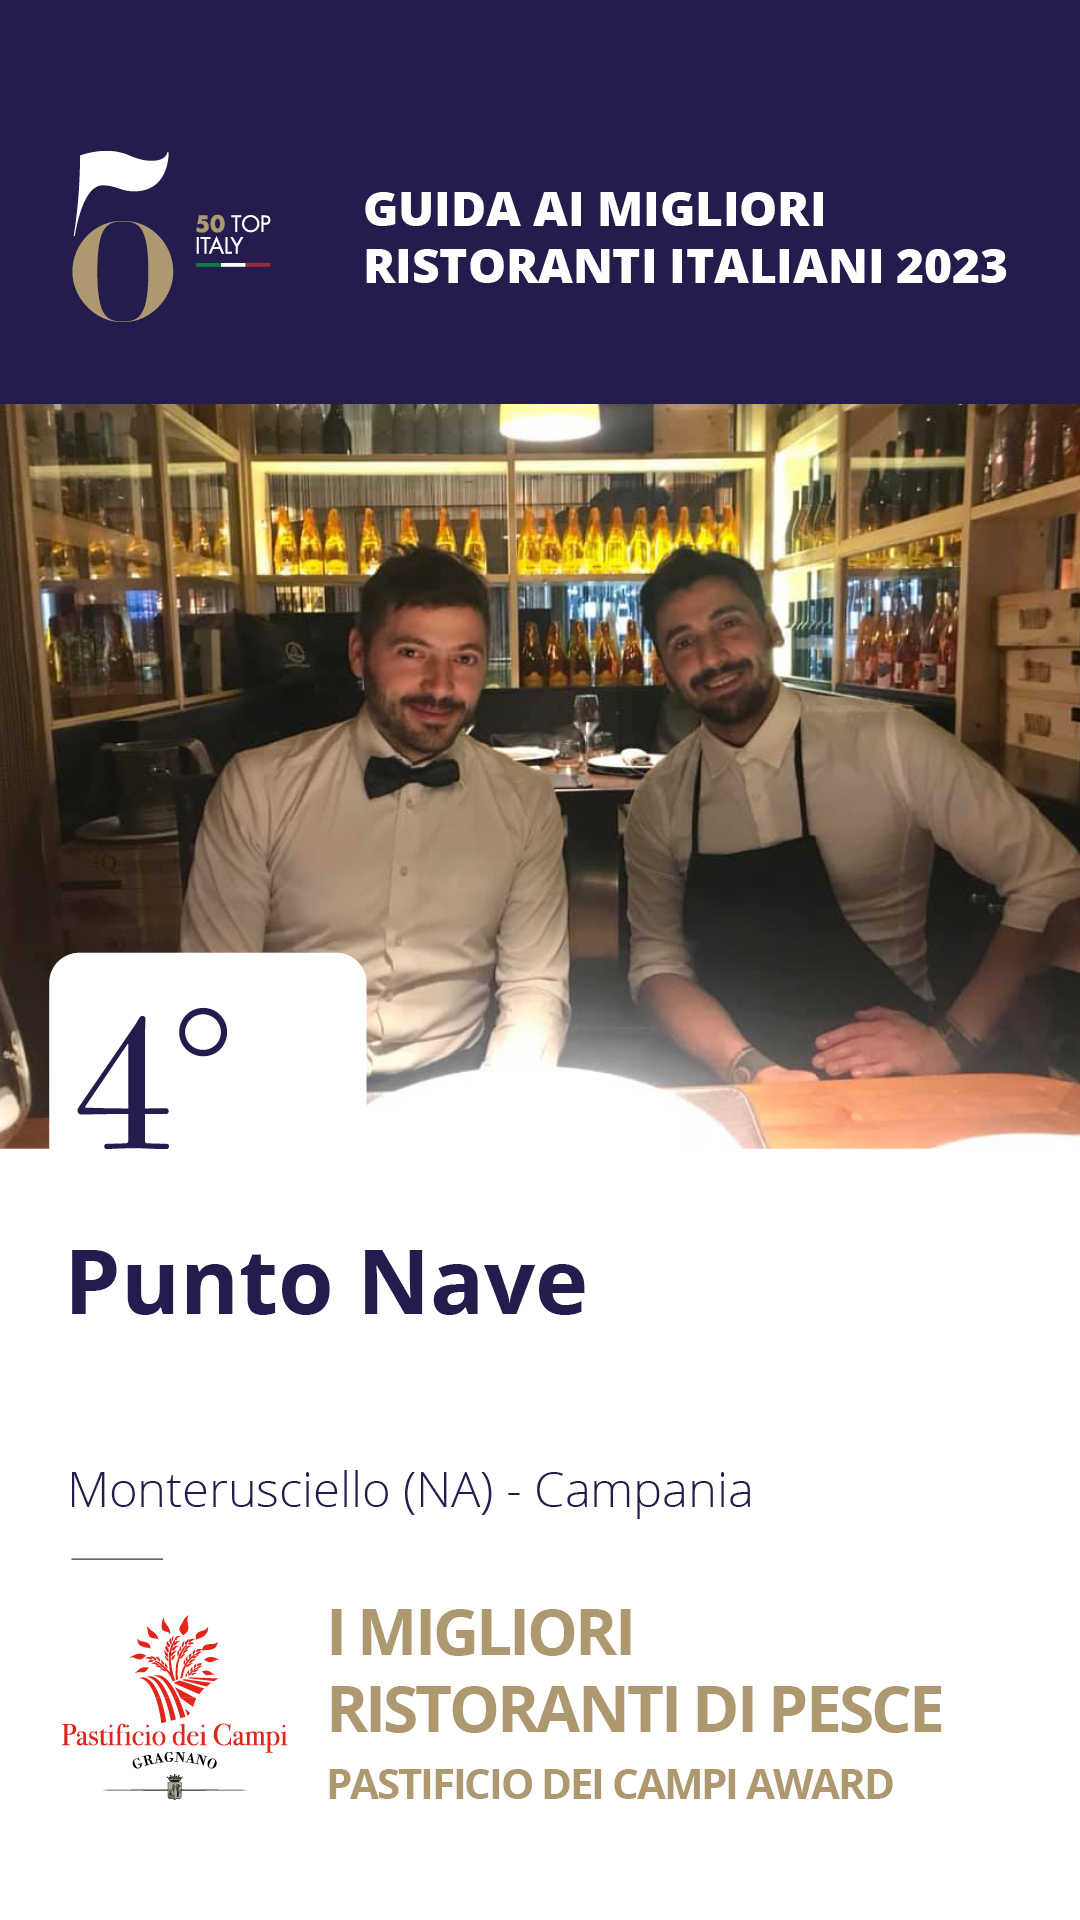 4 - Punto Nave - Monterusciello (NA), Campania